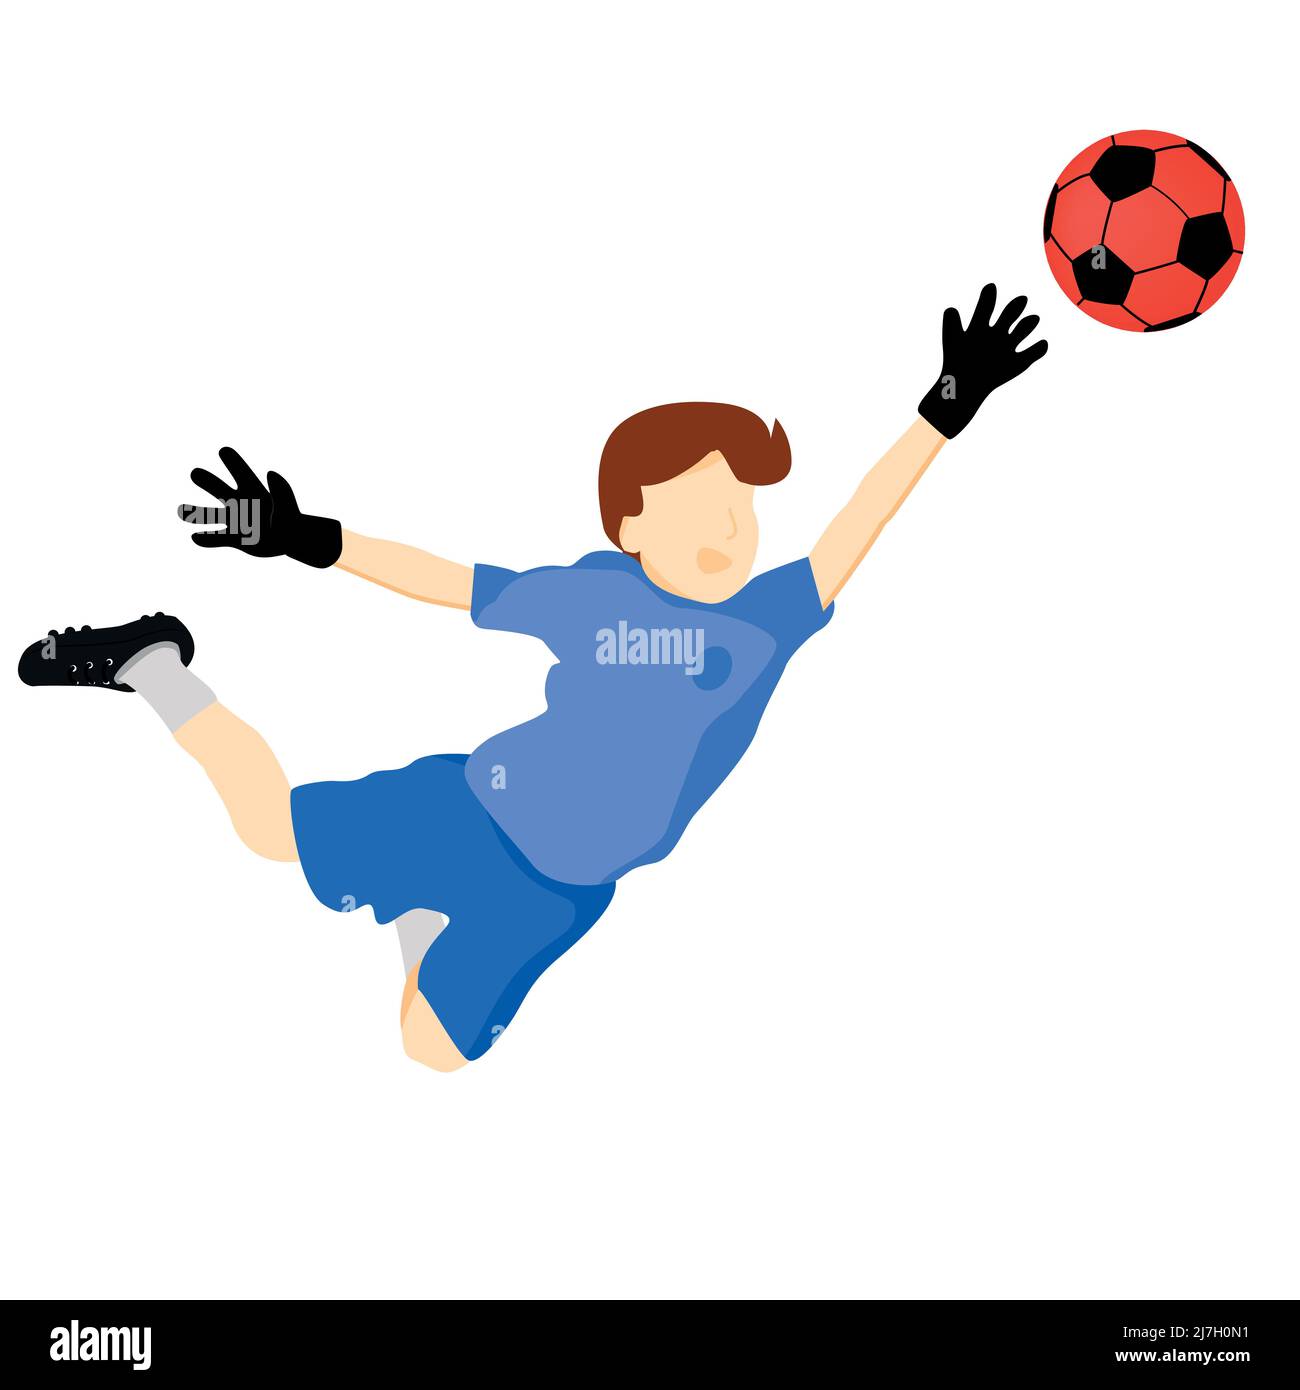 Flache Zeichnung eines Kindes, das Torhüter spielt und sich ausdehnt, um den Ball zu stoppen Stock Vektor